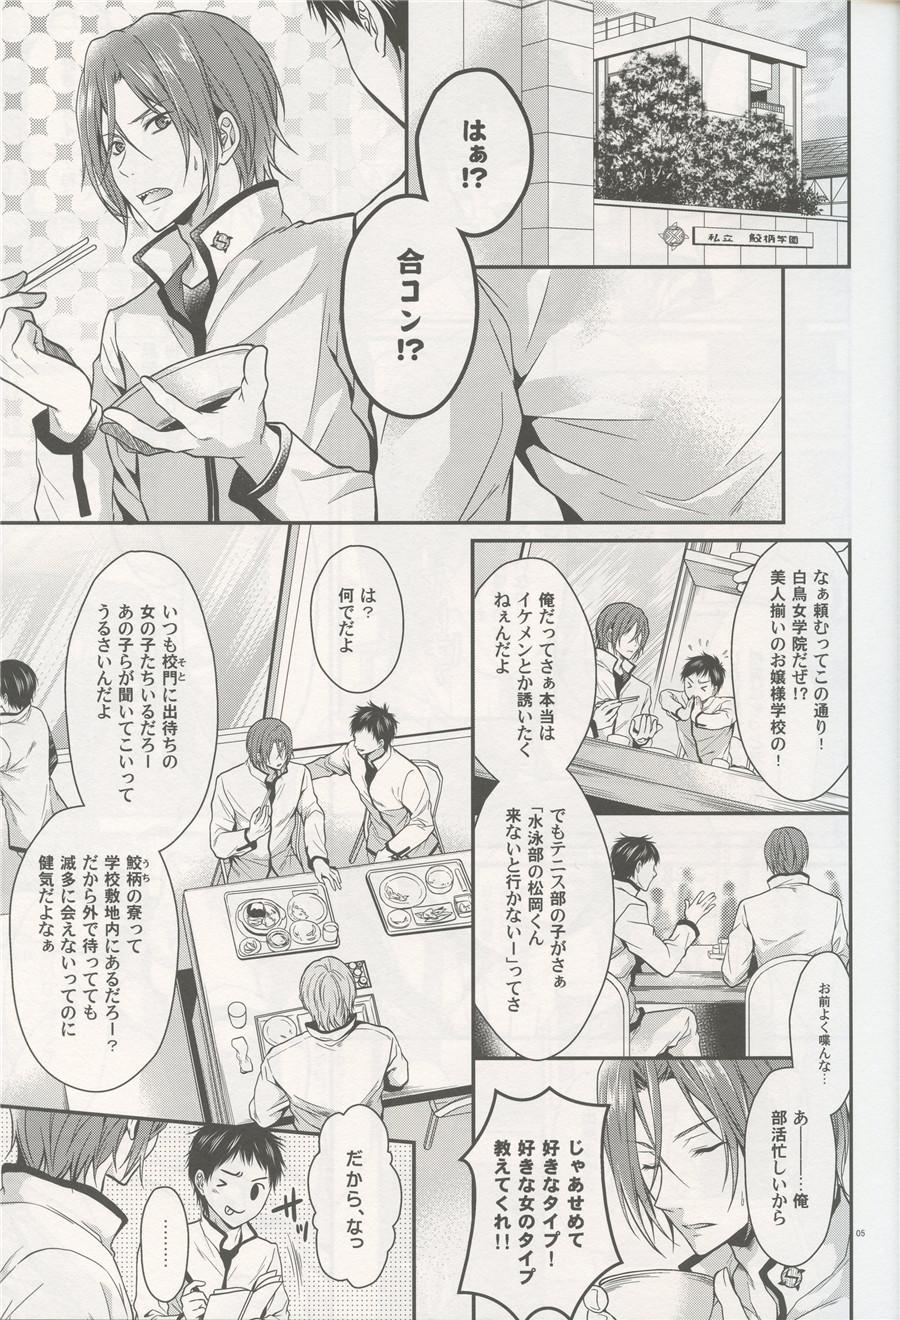 Abuse Aitsu no Yome Skill ga Takasugirundaga. - Free  - Page 4